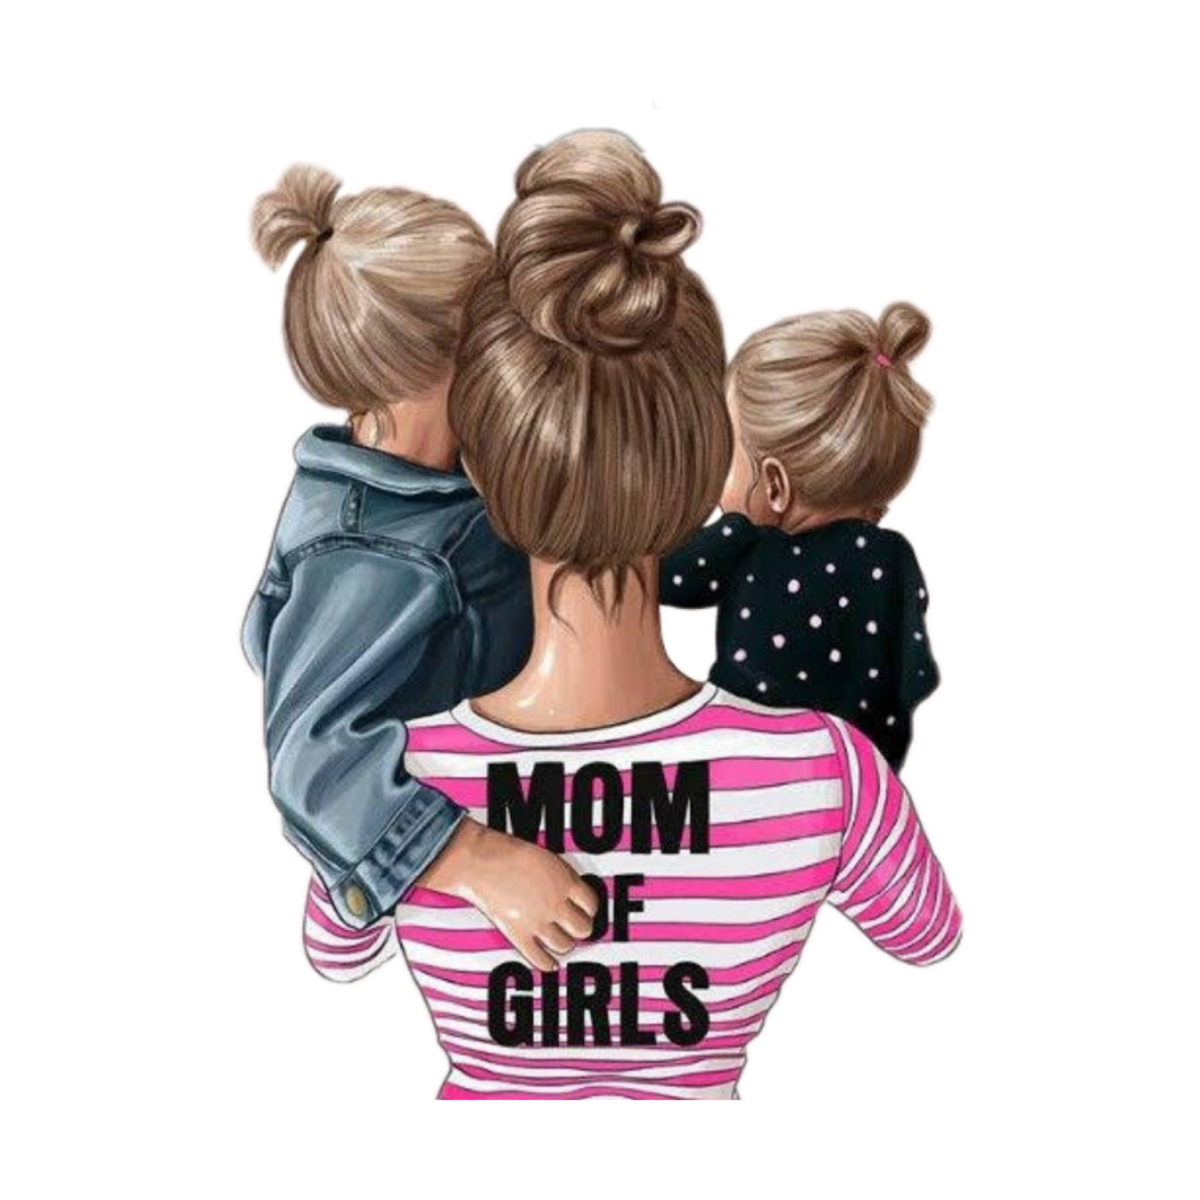 Картинки на телефон мама. Модные иллюстрации мама и дети. Мама с двумя девочками. Иллюстрация мама с двумя дочками.